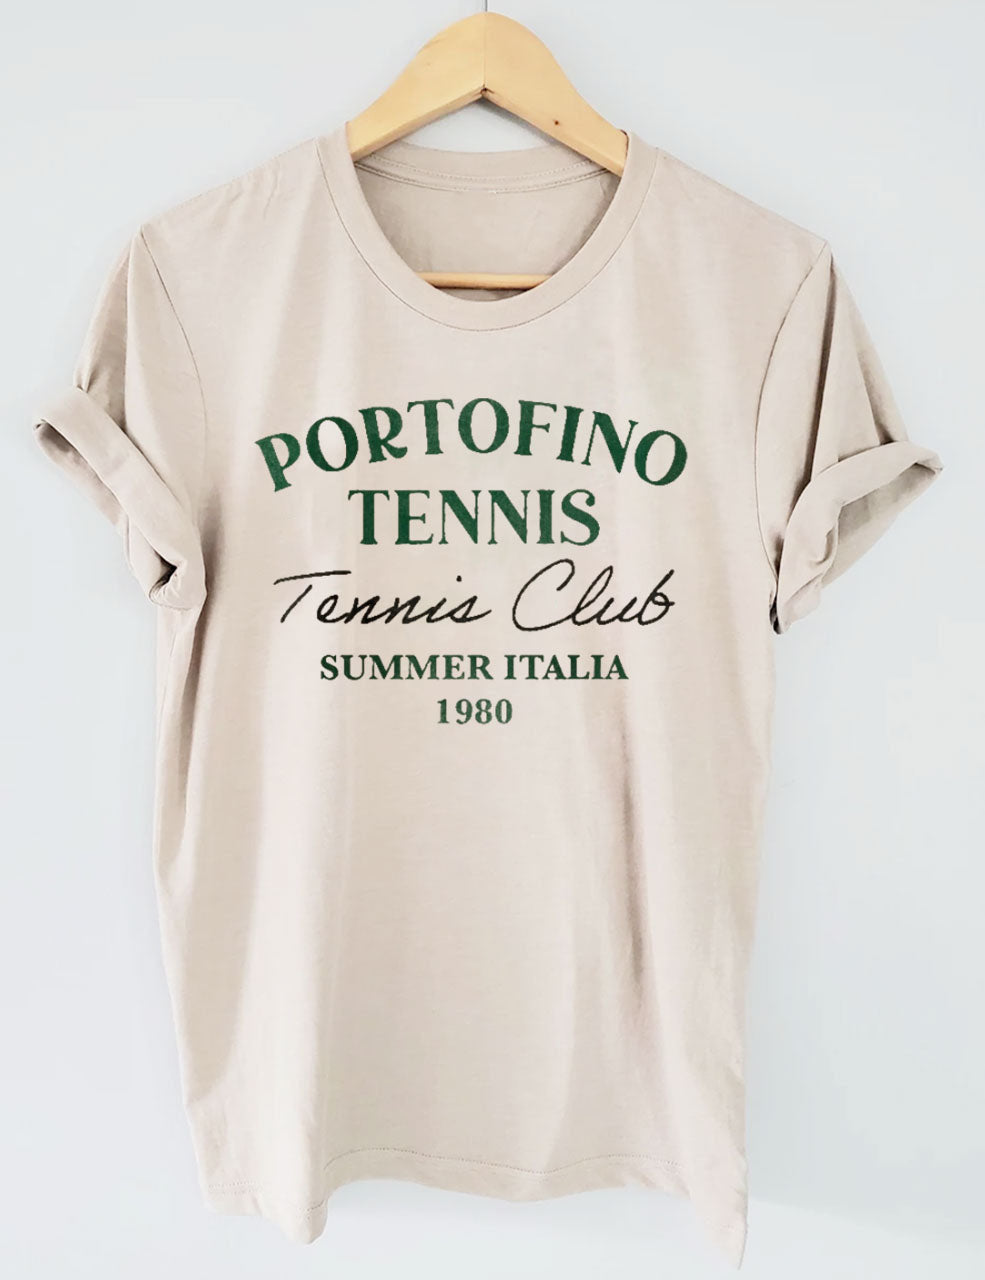 Portofino Tennis Club Italy  T-Shirt